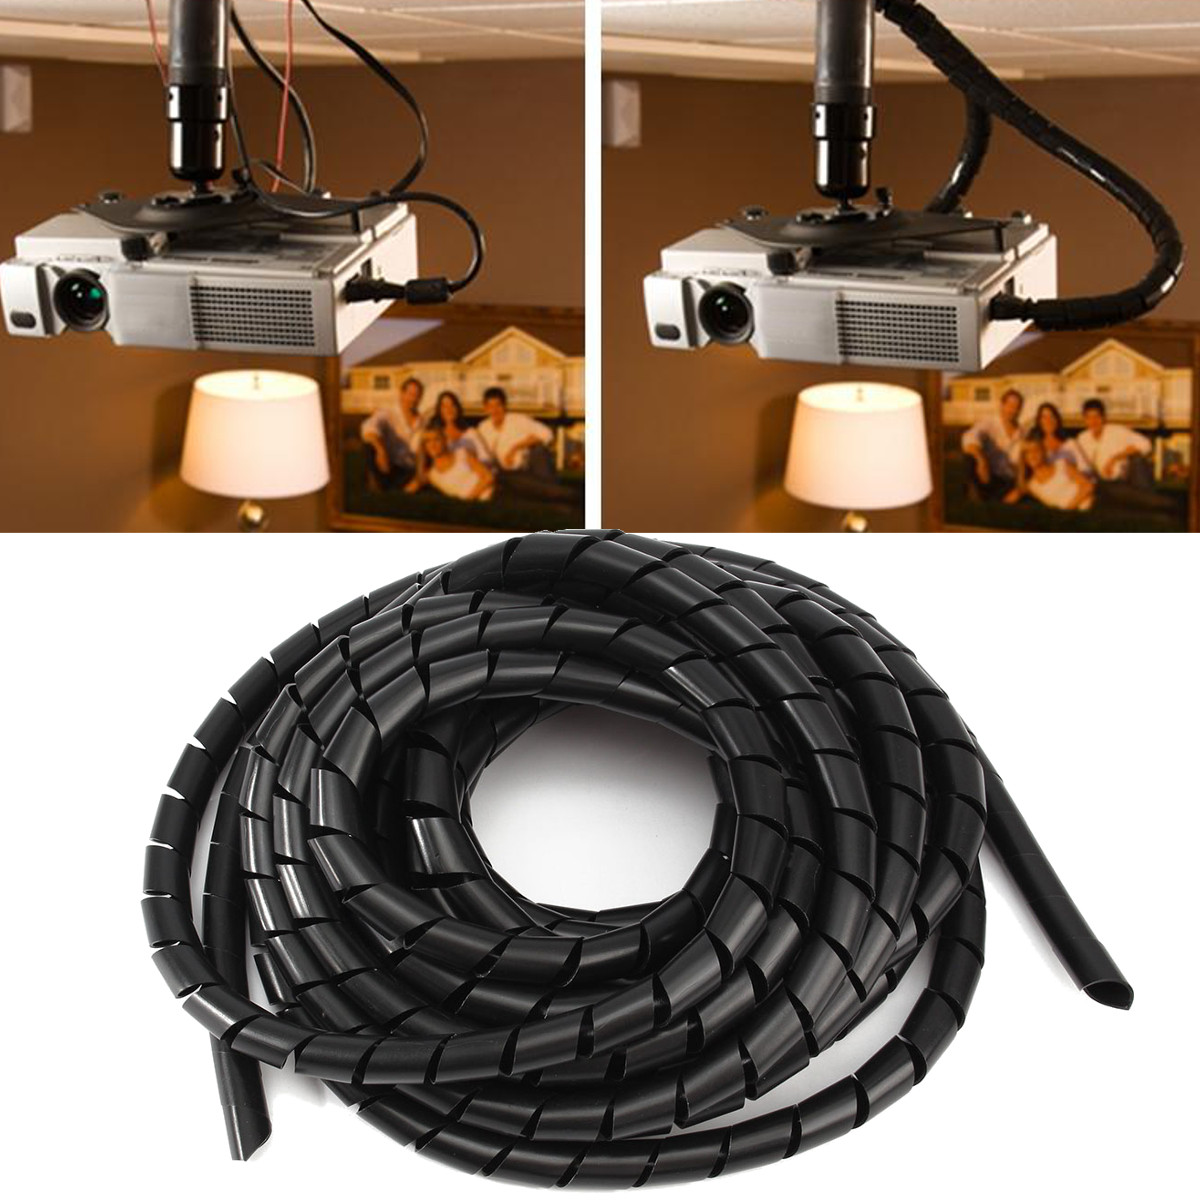 7m x 12mm Flexible PE Polyethylene Spiral Cable Wire Wrap Tube Black 2pcs 190459754705